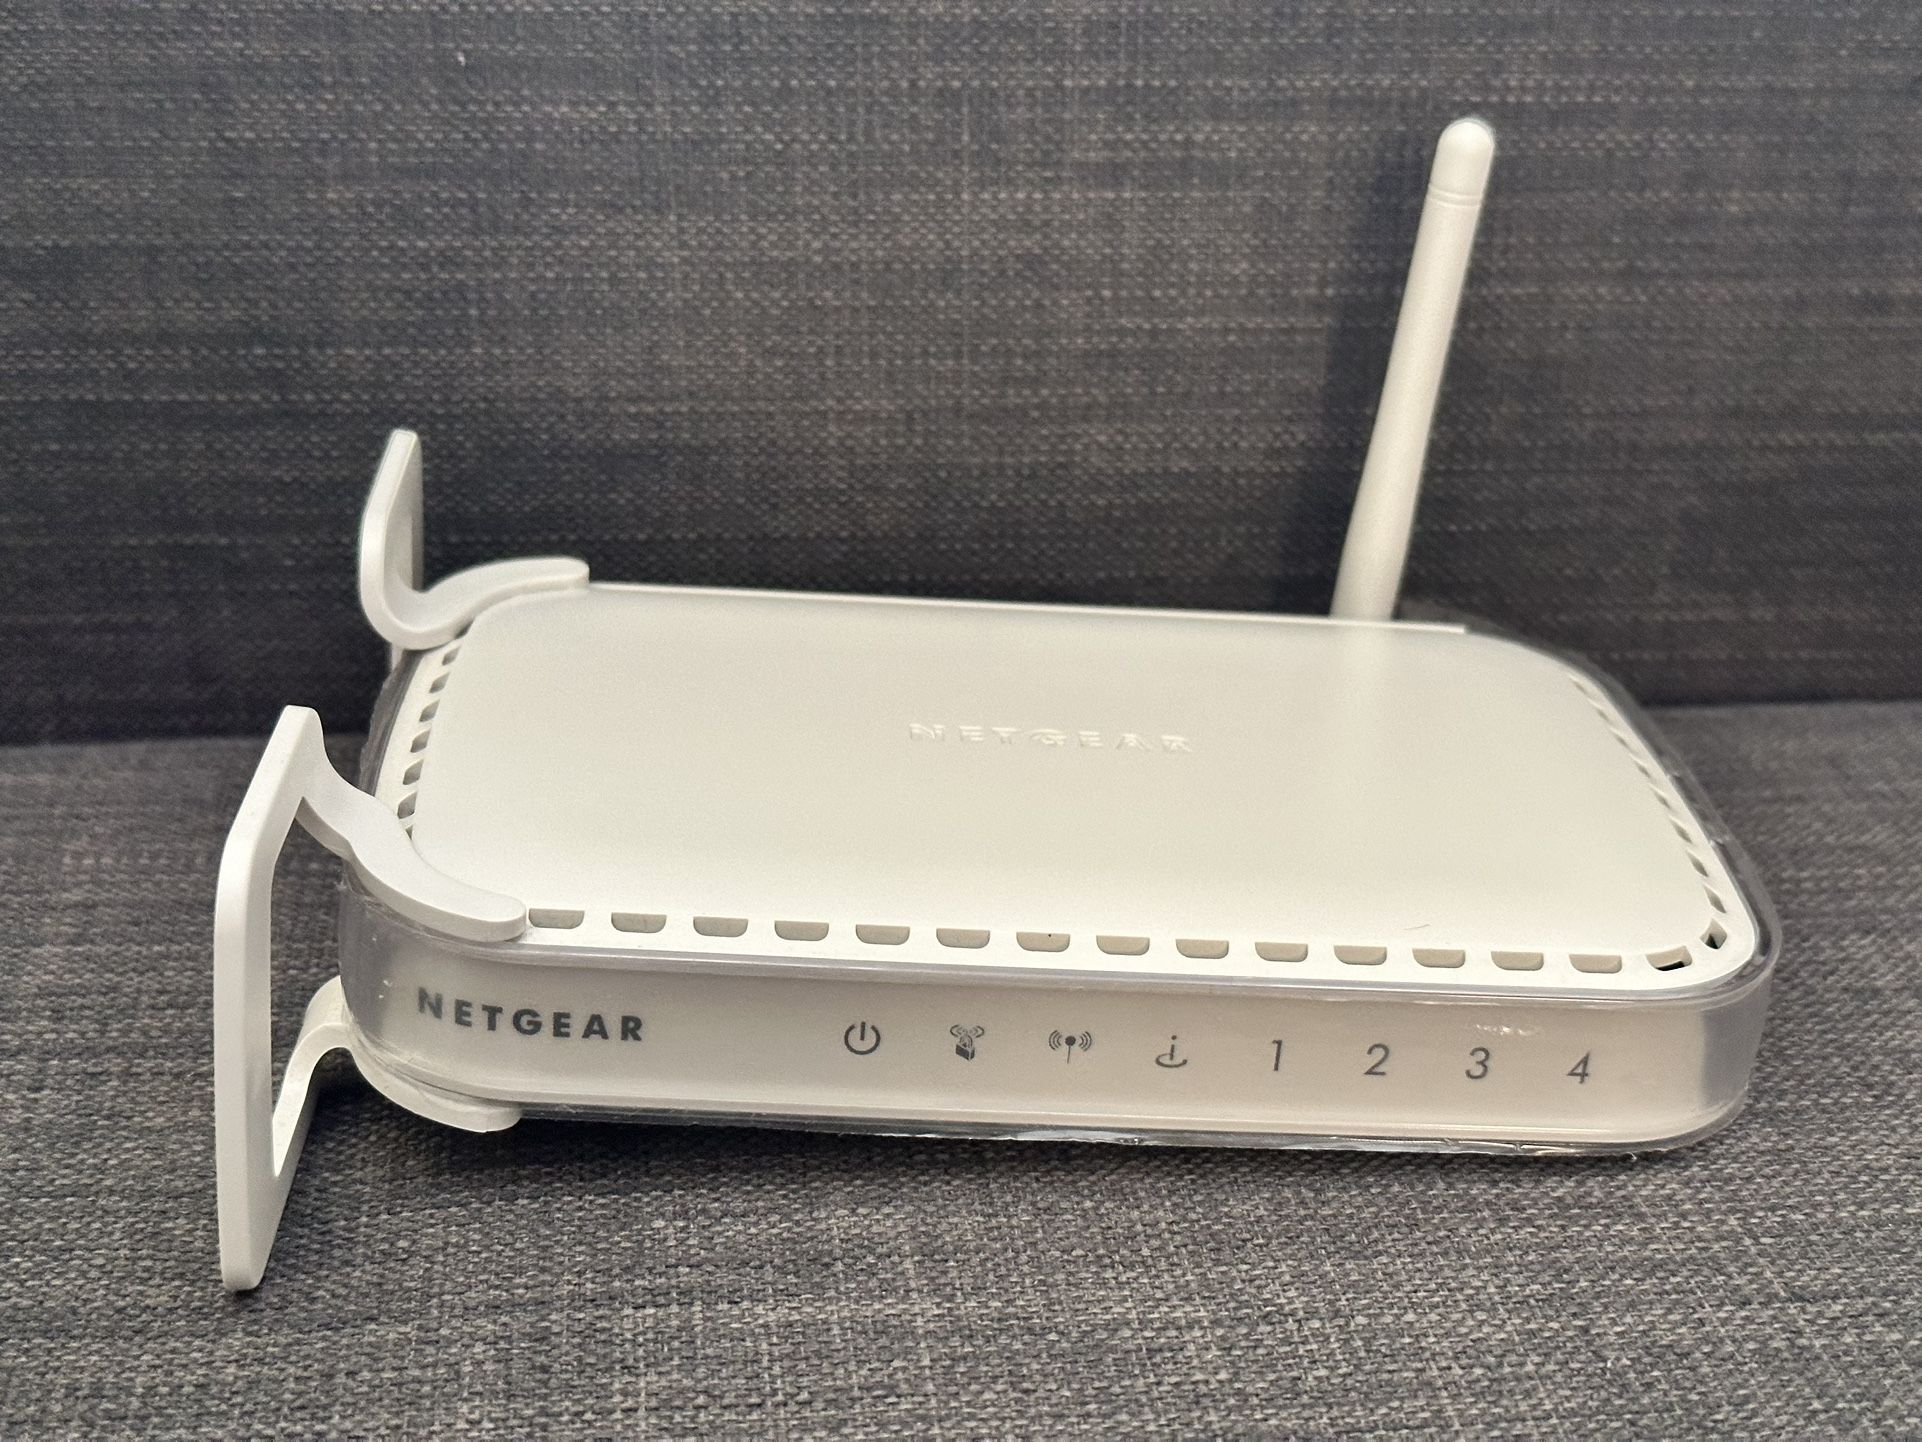 NETGEAR Wireless-G Router WGR614v10